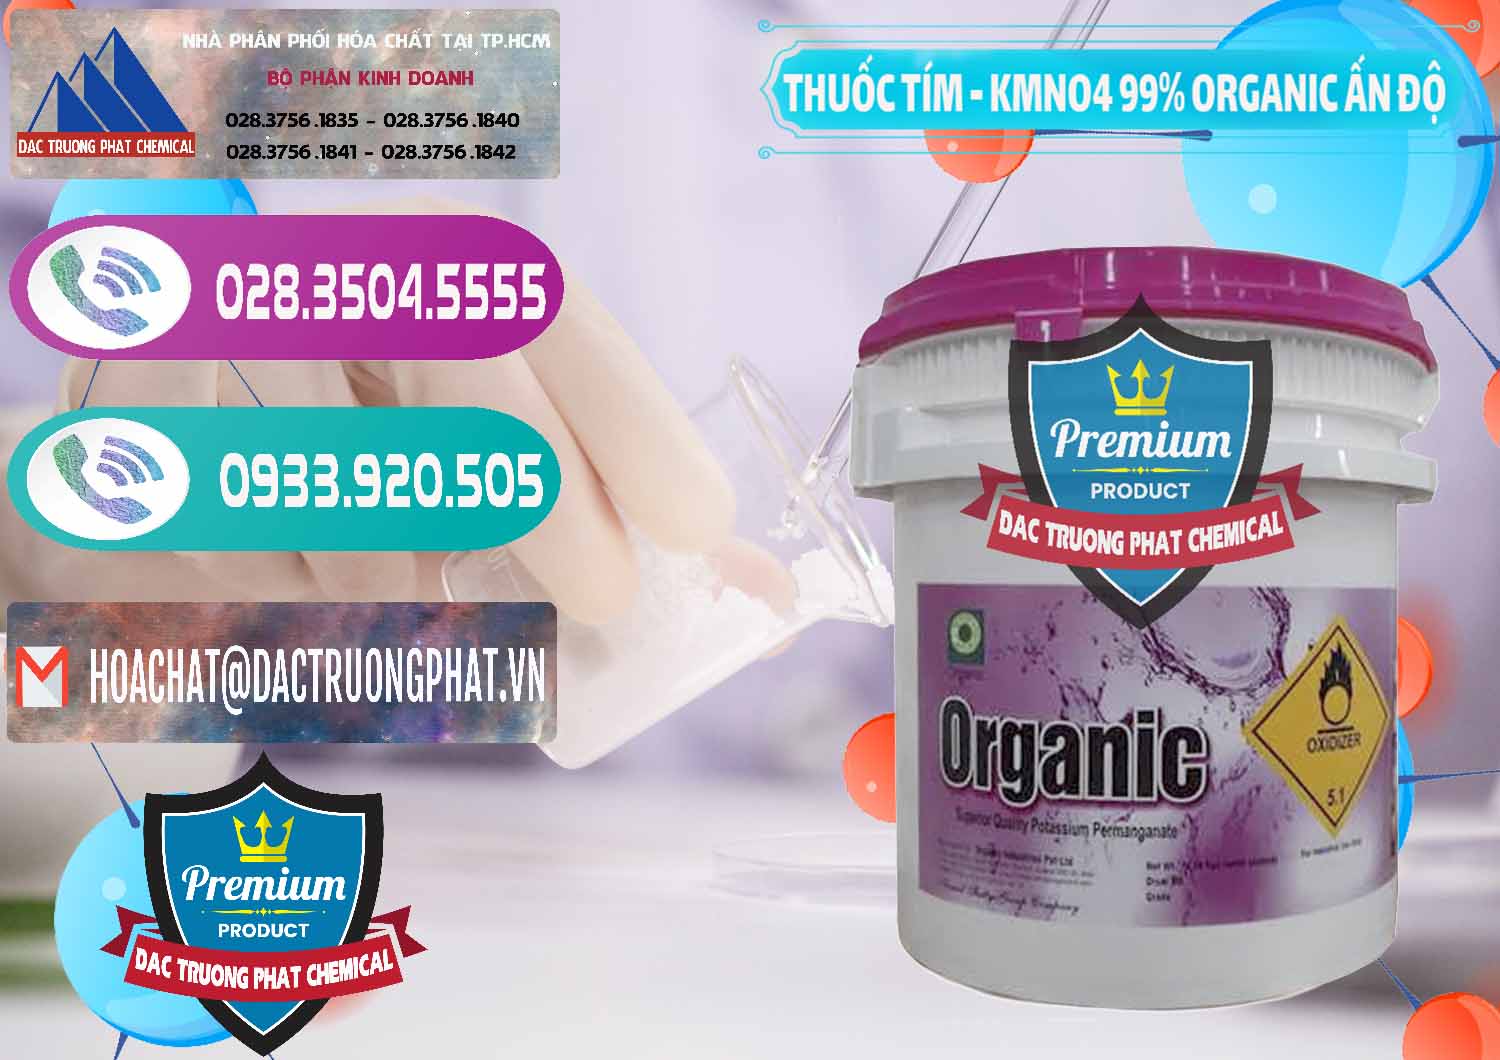 Nơi chuyên phân phối & bán Thuốc Tím - KMNO4 99% Organic Ấn Độ India - 0216 - Đơn vị kinh doanh & phân phối hóa chất tại TP.HCM - hoachatxulynuoc.com